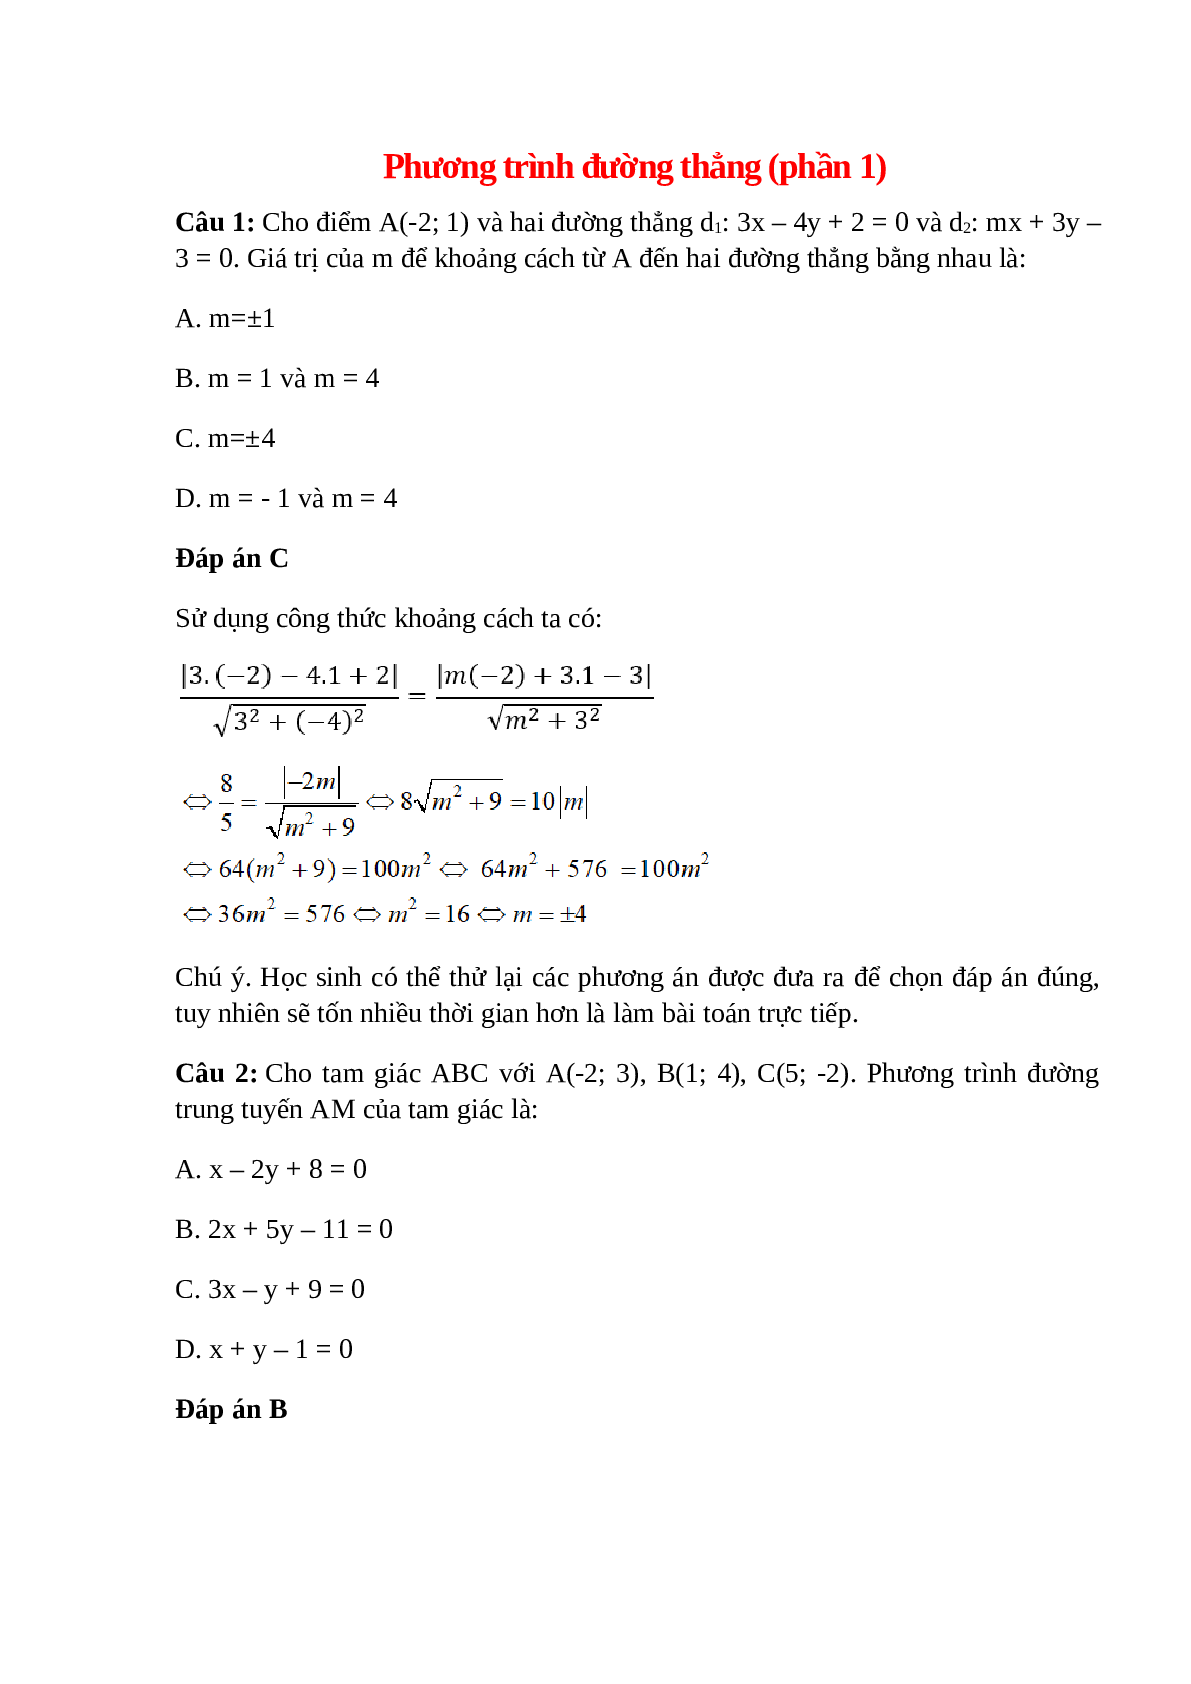 Trắc nghiệm Phương trình đường thẳng (phần 1) có đáp án – Toán lớp 10 (trang 1)